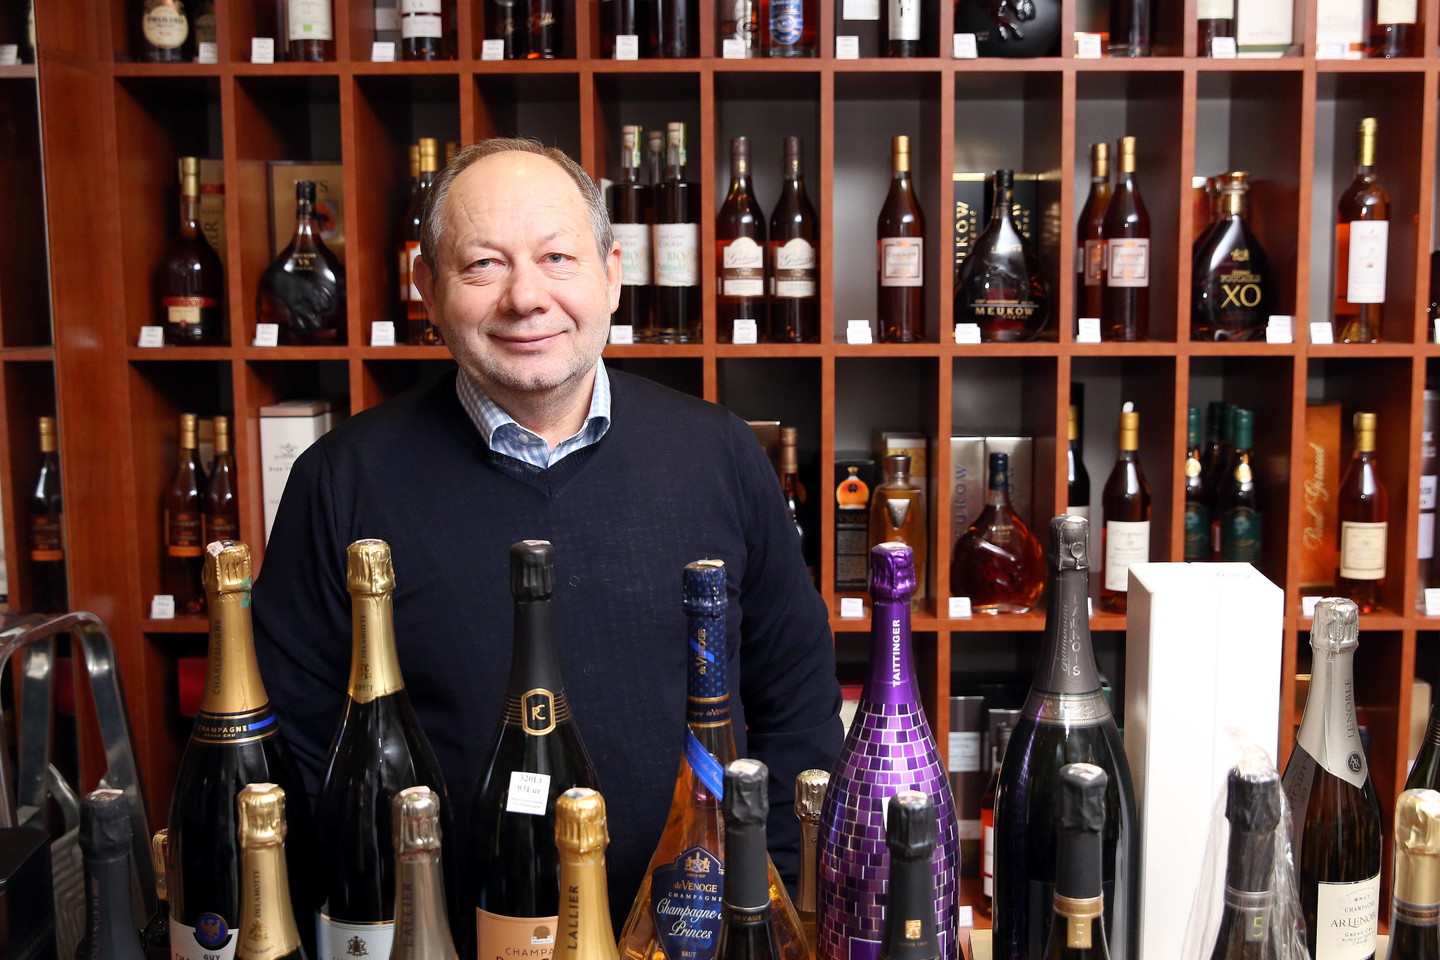 Gėrimų parduotuvės „Cognac Boutique“ vadovas, šampano ekspertas ir degustacijų vedėjas Juozas Kabašinskas patarė, su kuo derinti šampaną.<br>R.Danisevičiaus nuotr.